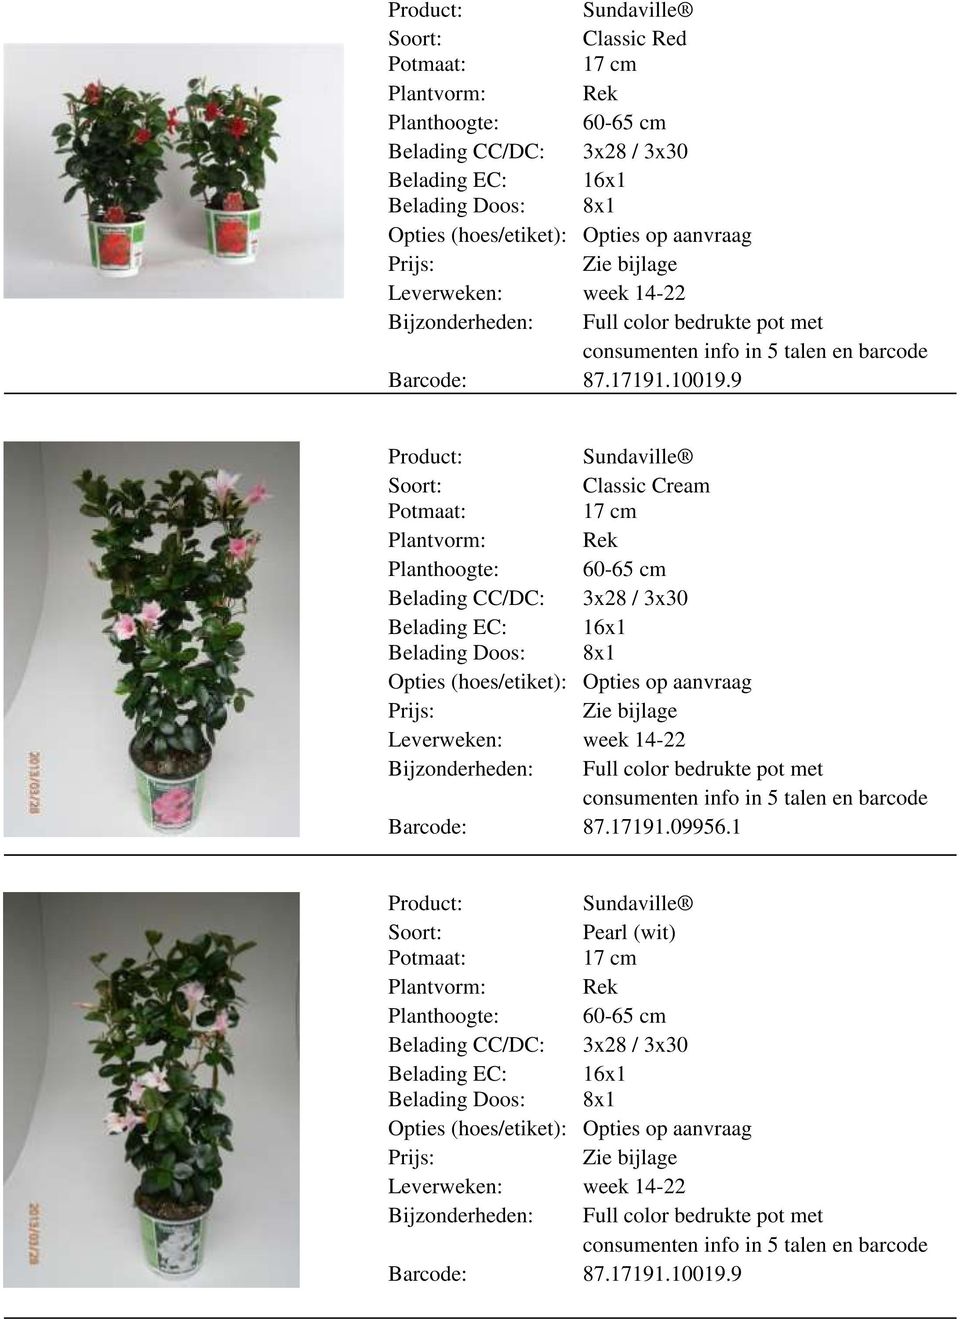 9 Classic Cream 17 cm Plantvorm: Rek Planthoogte: 60-65 cm Belading CC/DC: 3x28 / 3x30 Belading EC: 16x1 Belading Doos: 8x1 Bijzonderheden: Full color bedrukte